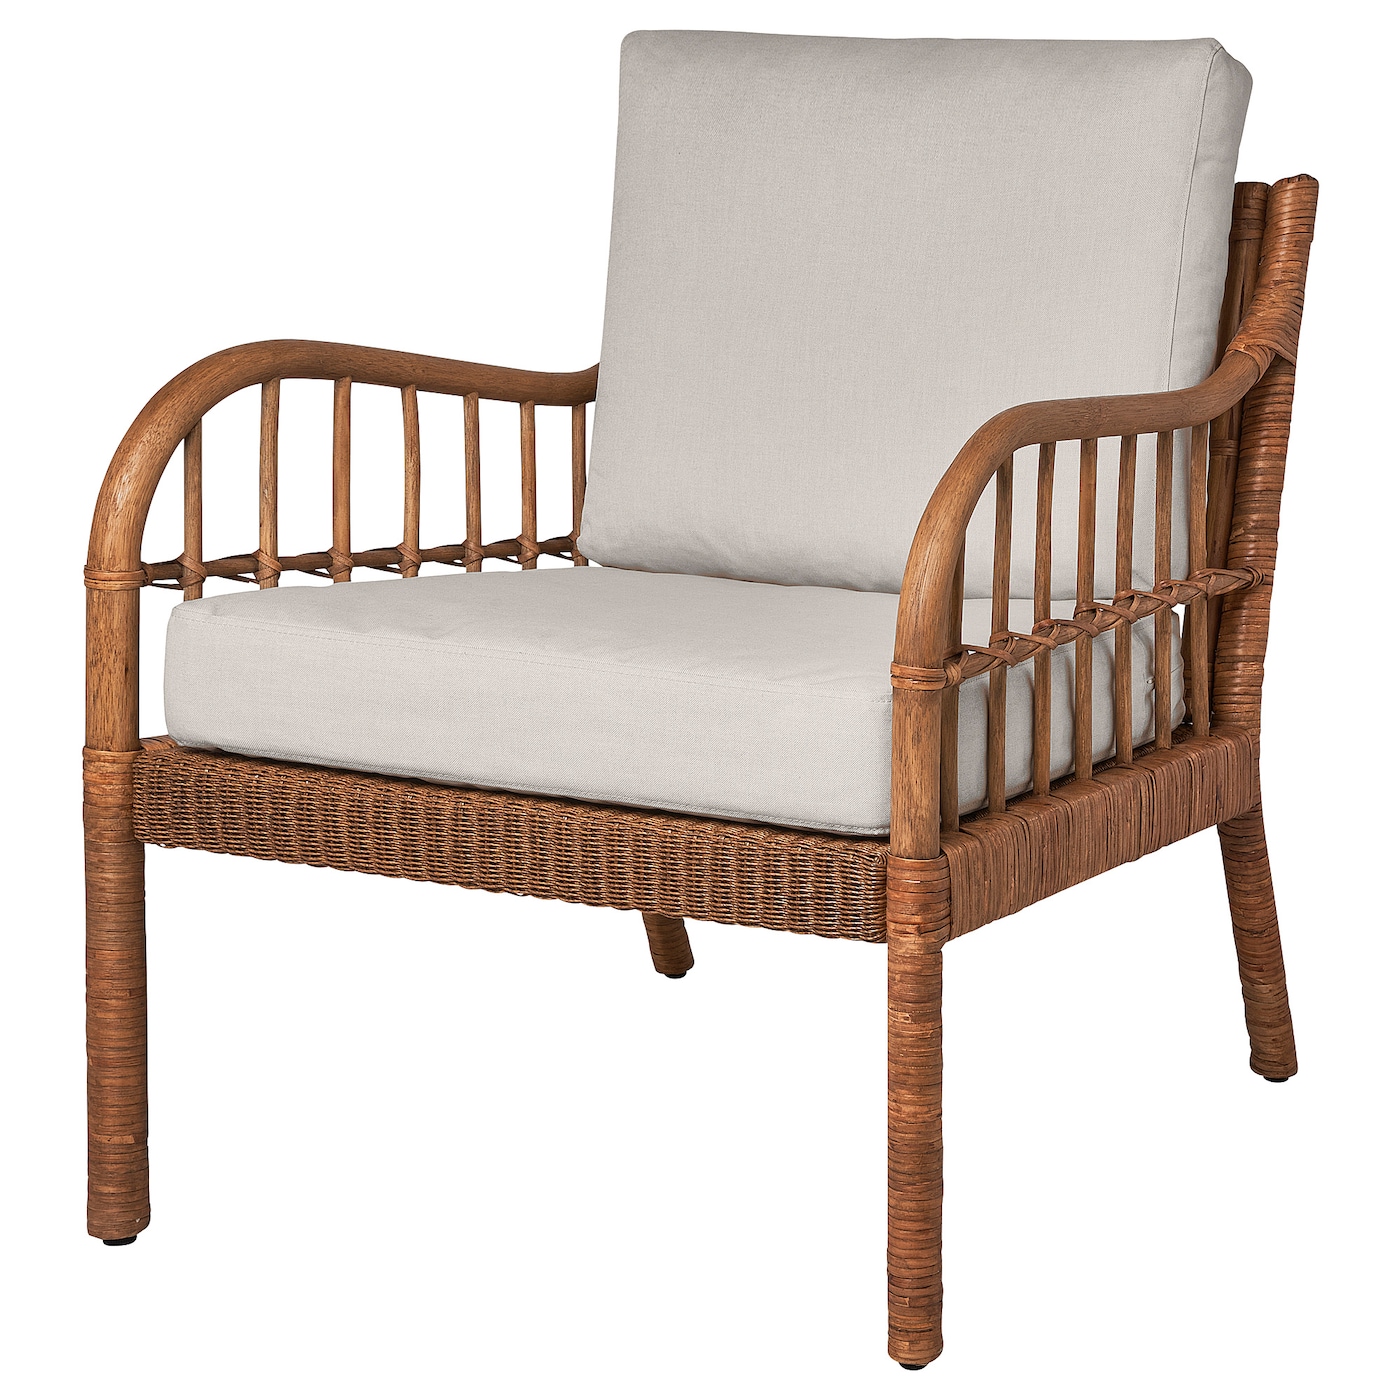 Кресло садовое - IKEA HOLMSTA, 73x57x55см, коричневый/светло-коричневый, ХОЛЬМСТА ИКЕА